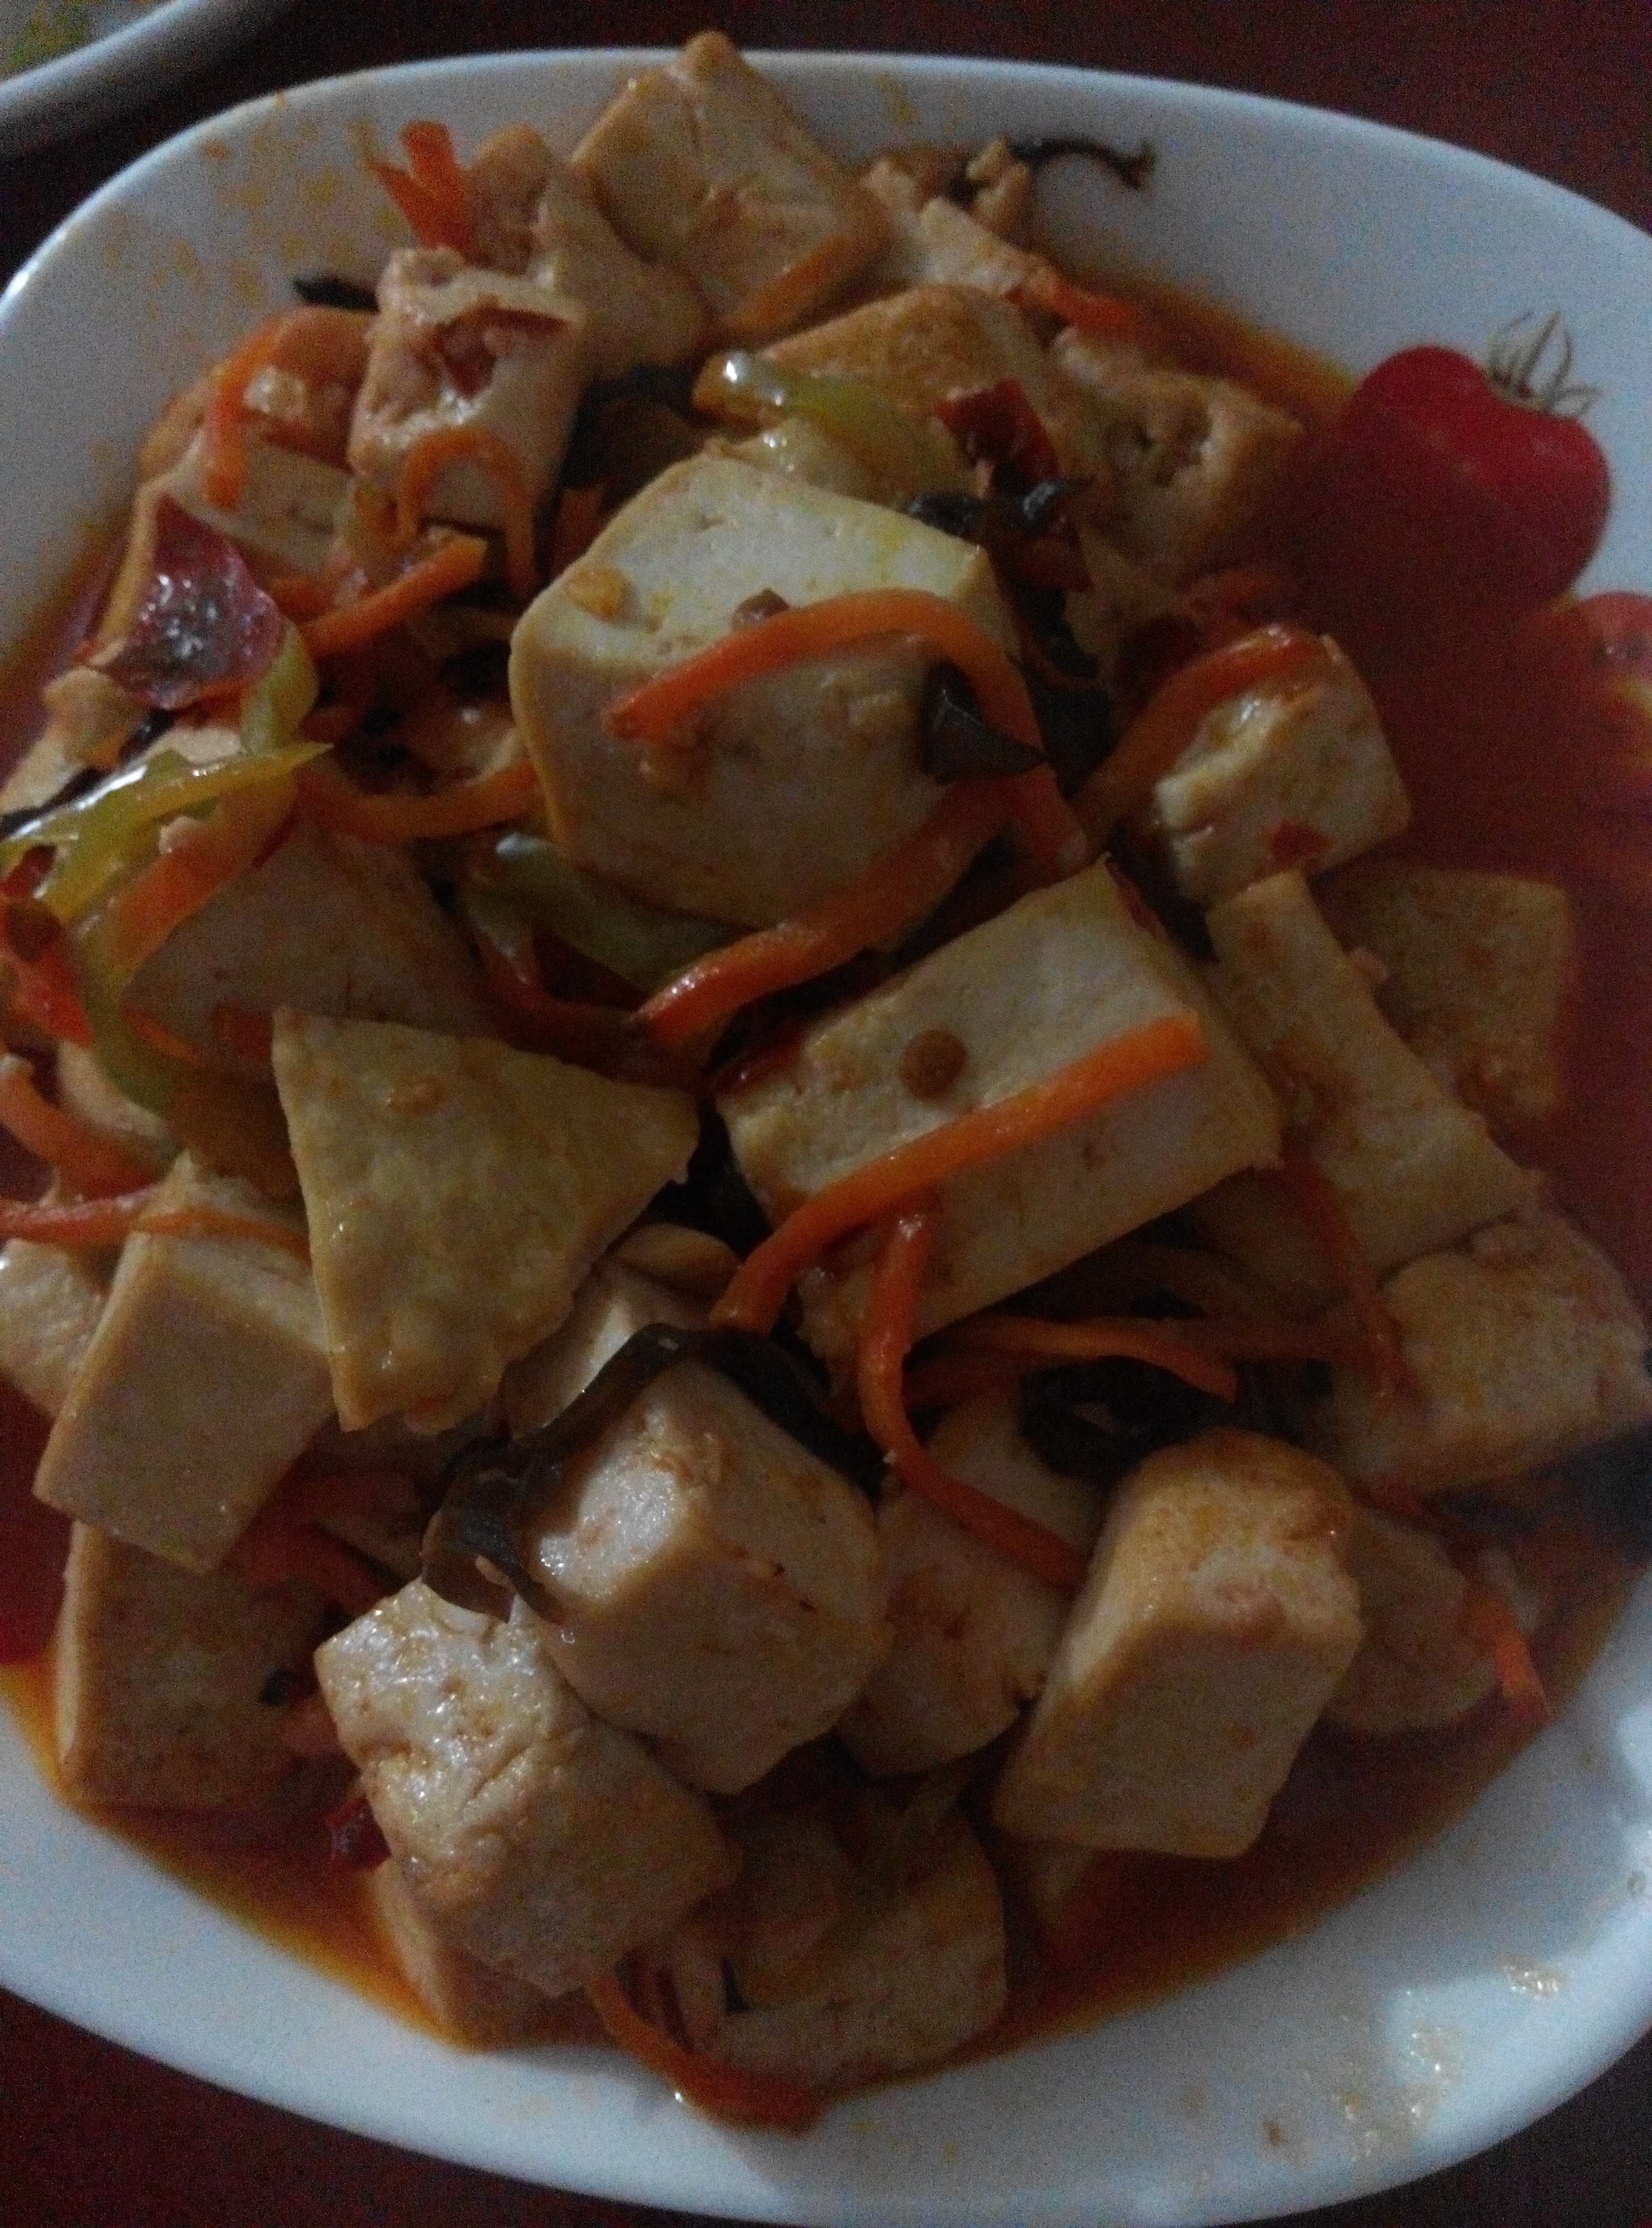 鱼香豆腐